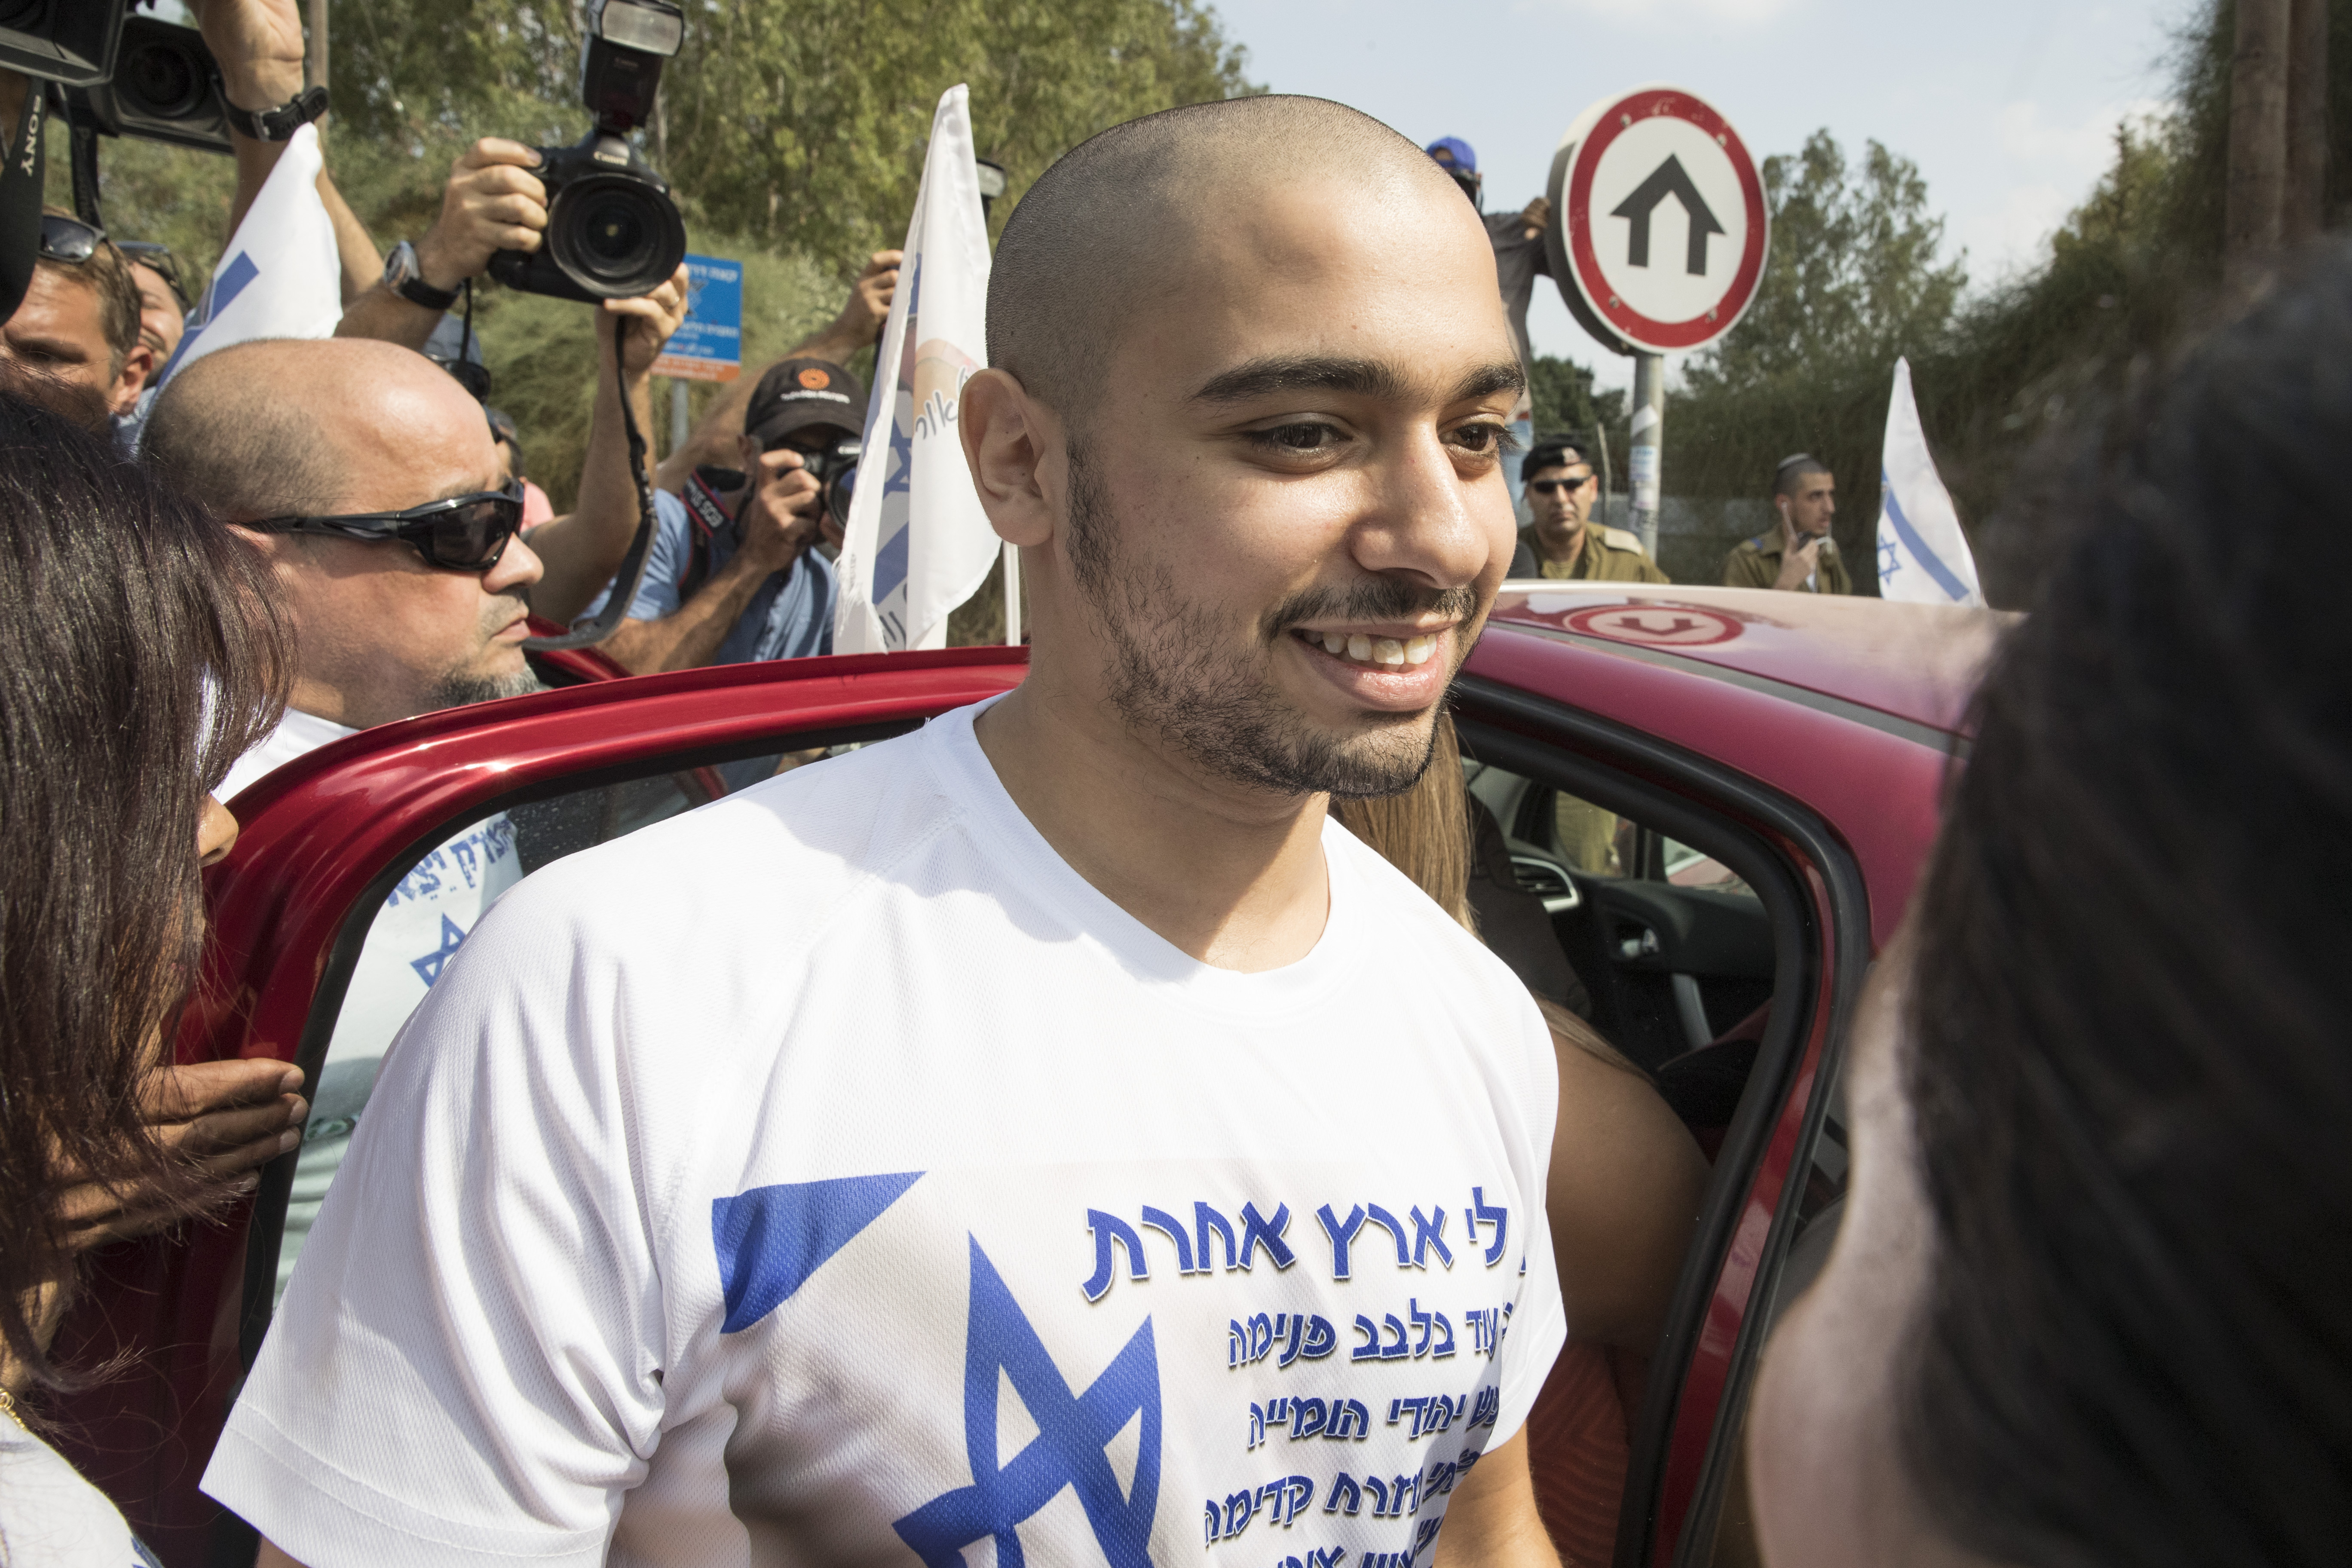 Kilenc hónap után kiengedték a börtönből az izraeli katonát, aki agyonlőtt egy ártalmatlanított palesztin merénylőt